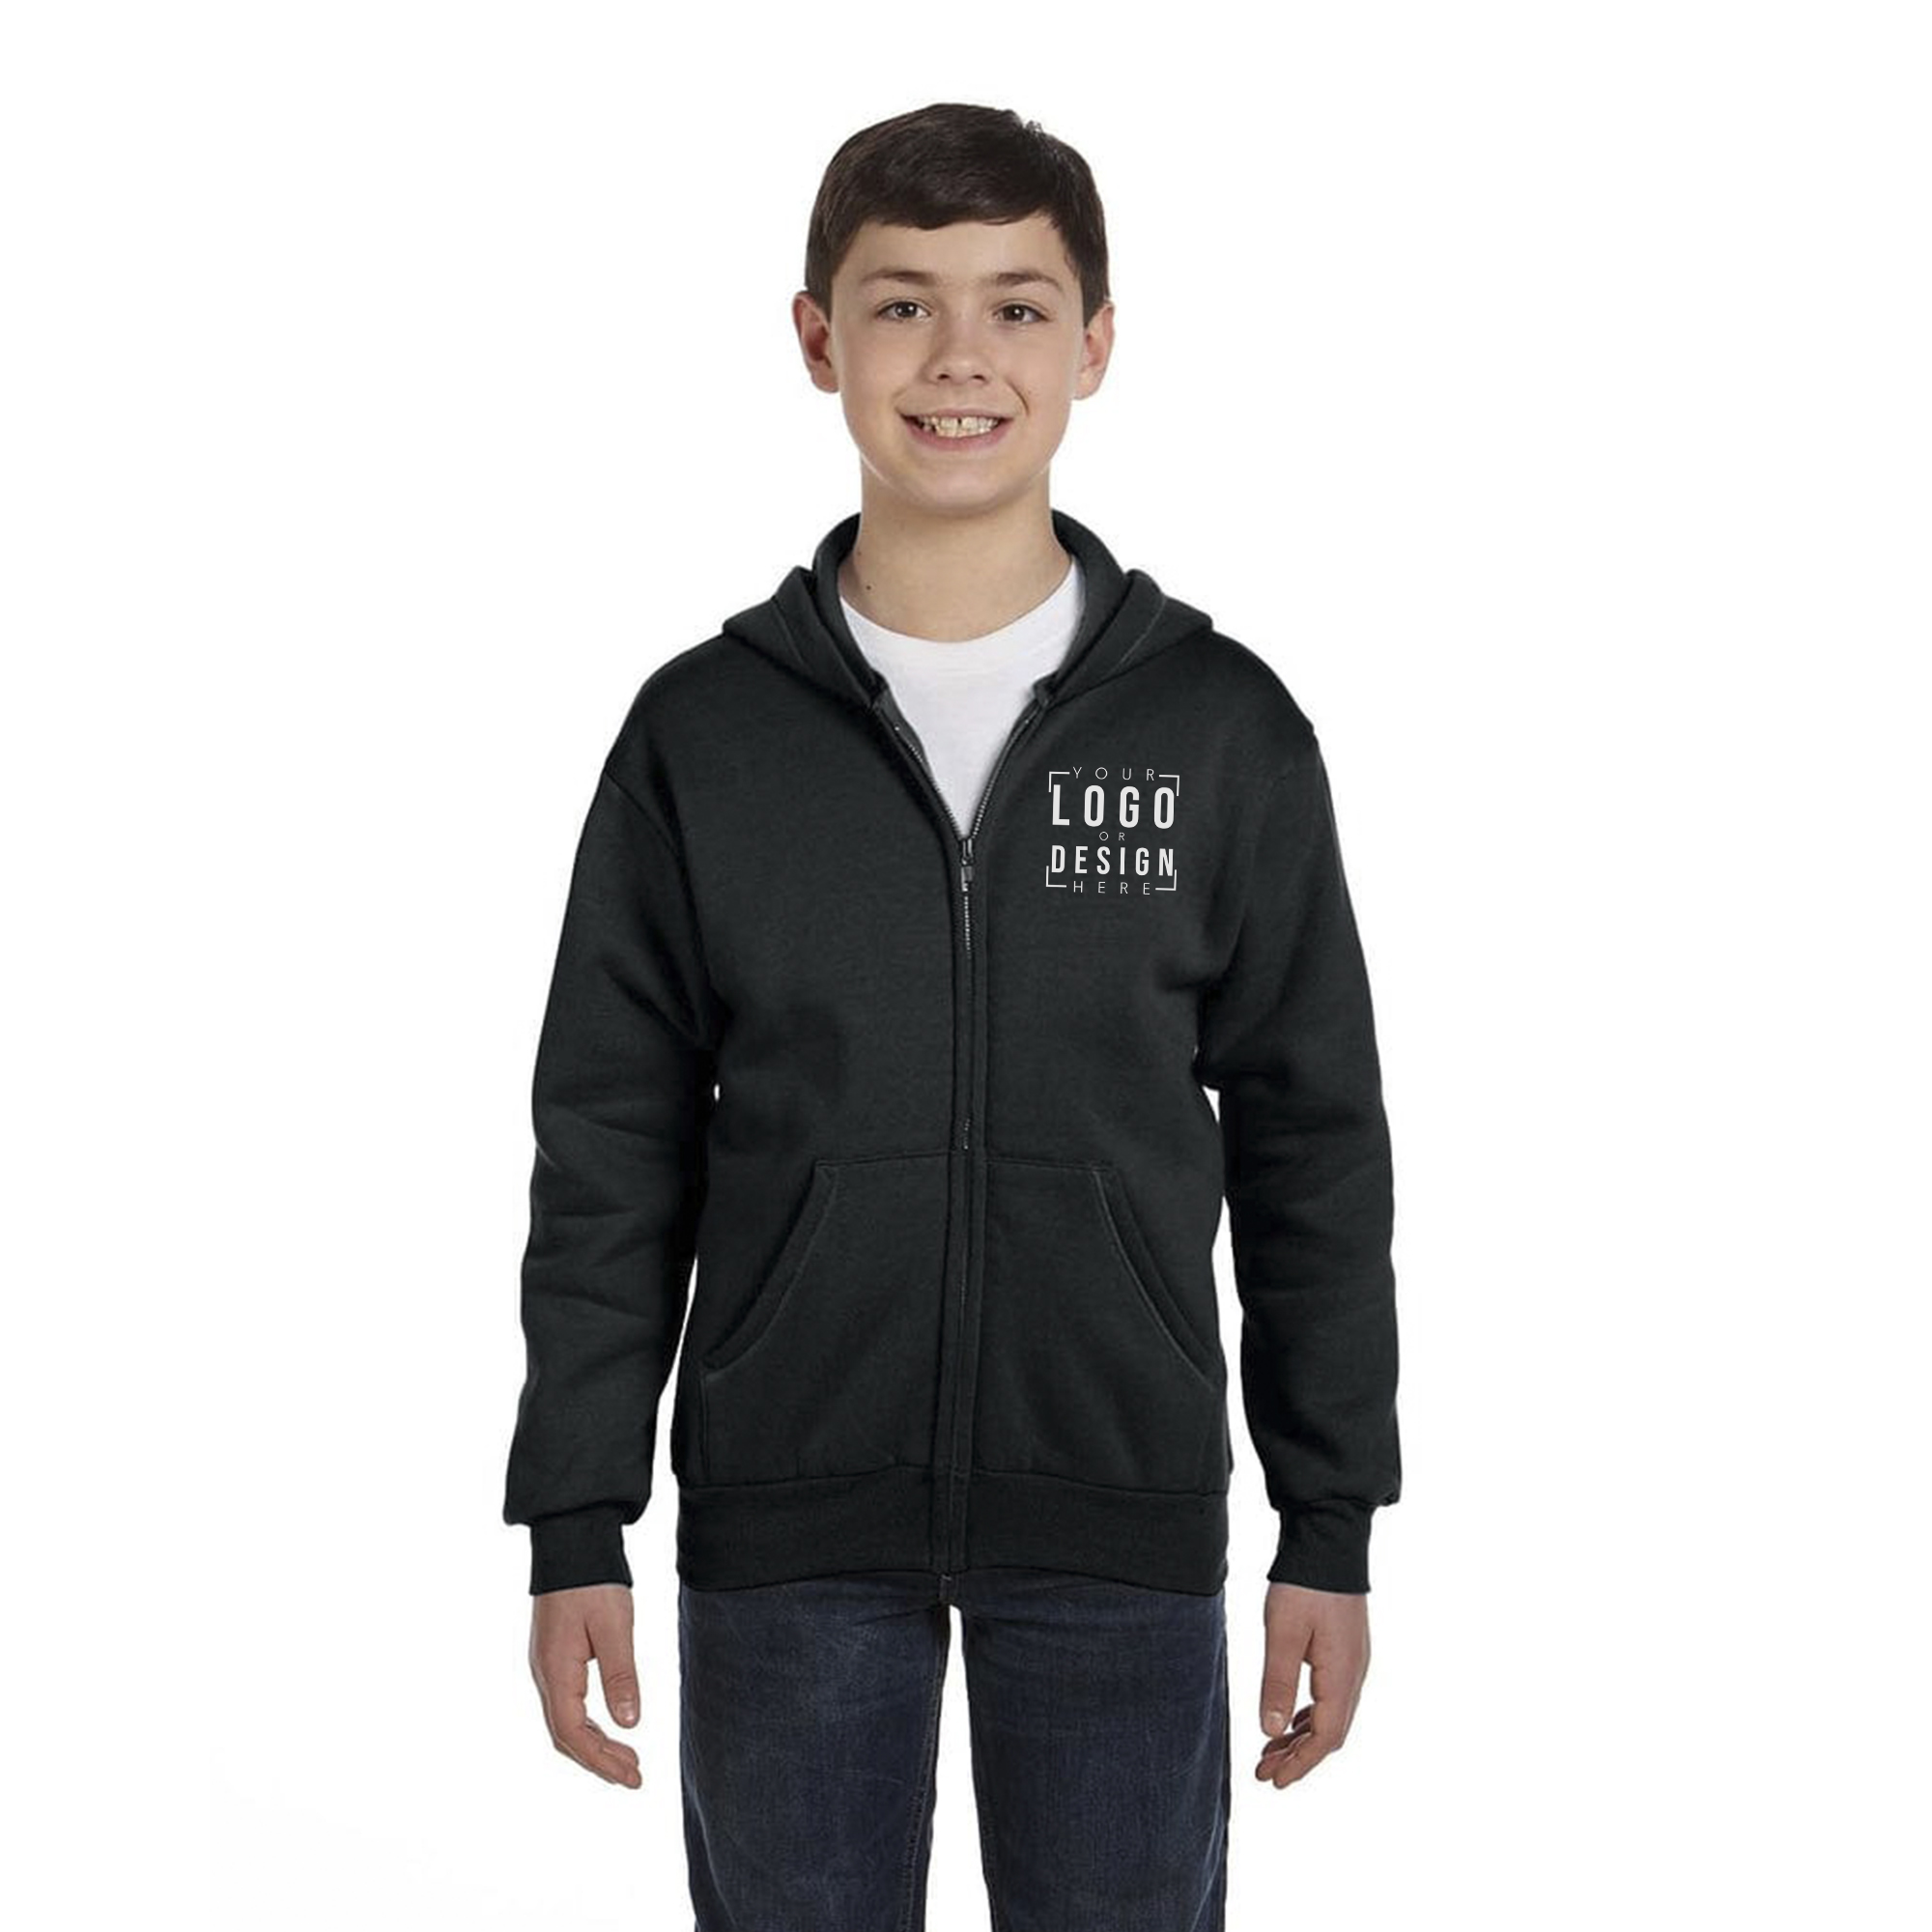 Hanes - Youth EcoSmart Full-Zip Hooded Sweatshirt